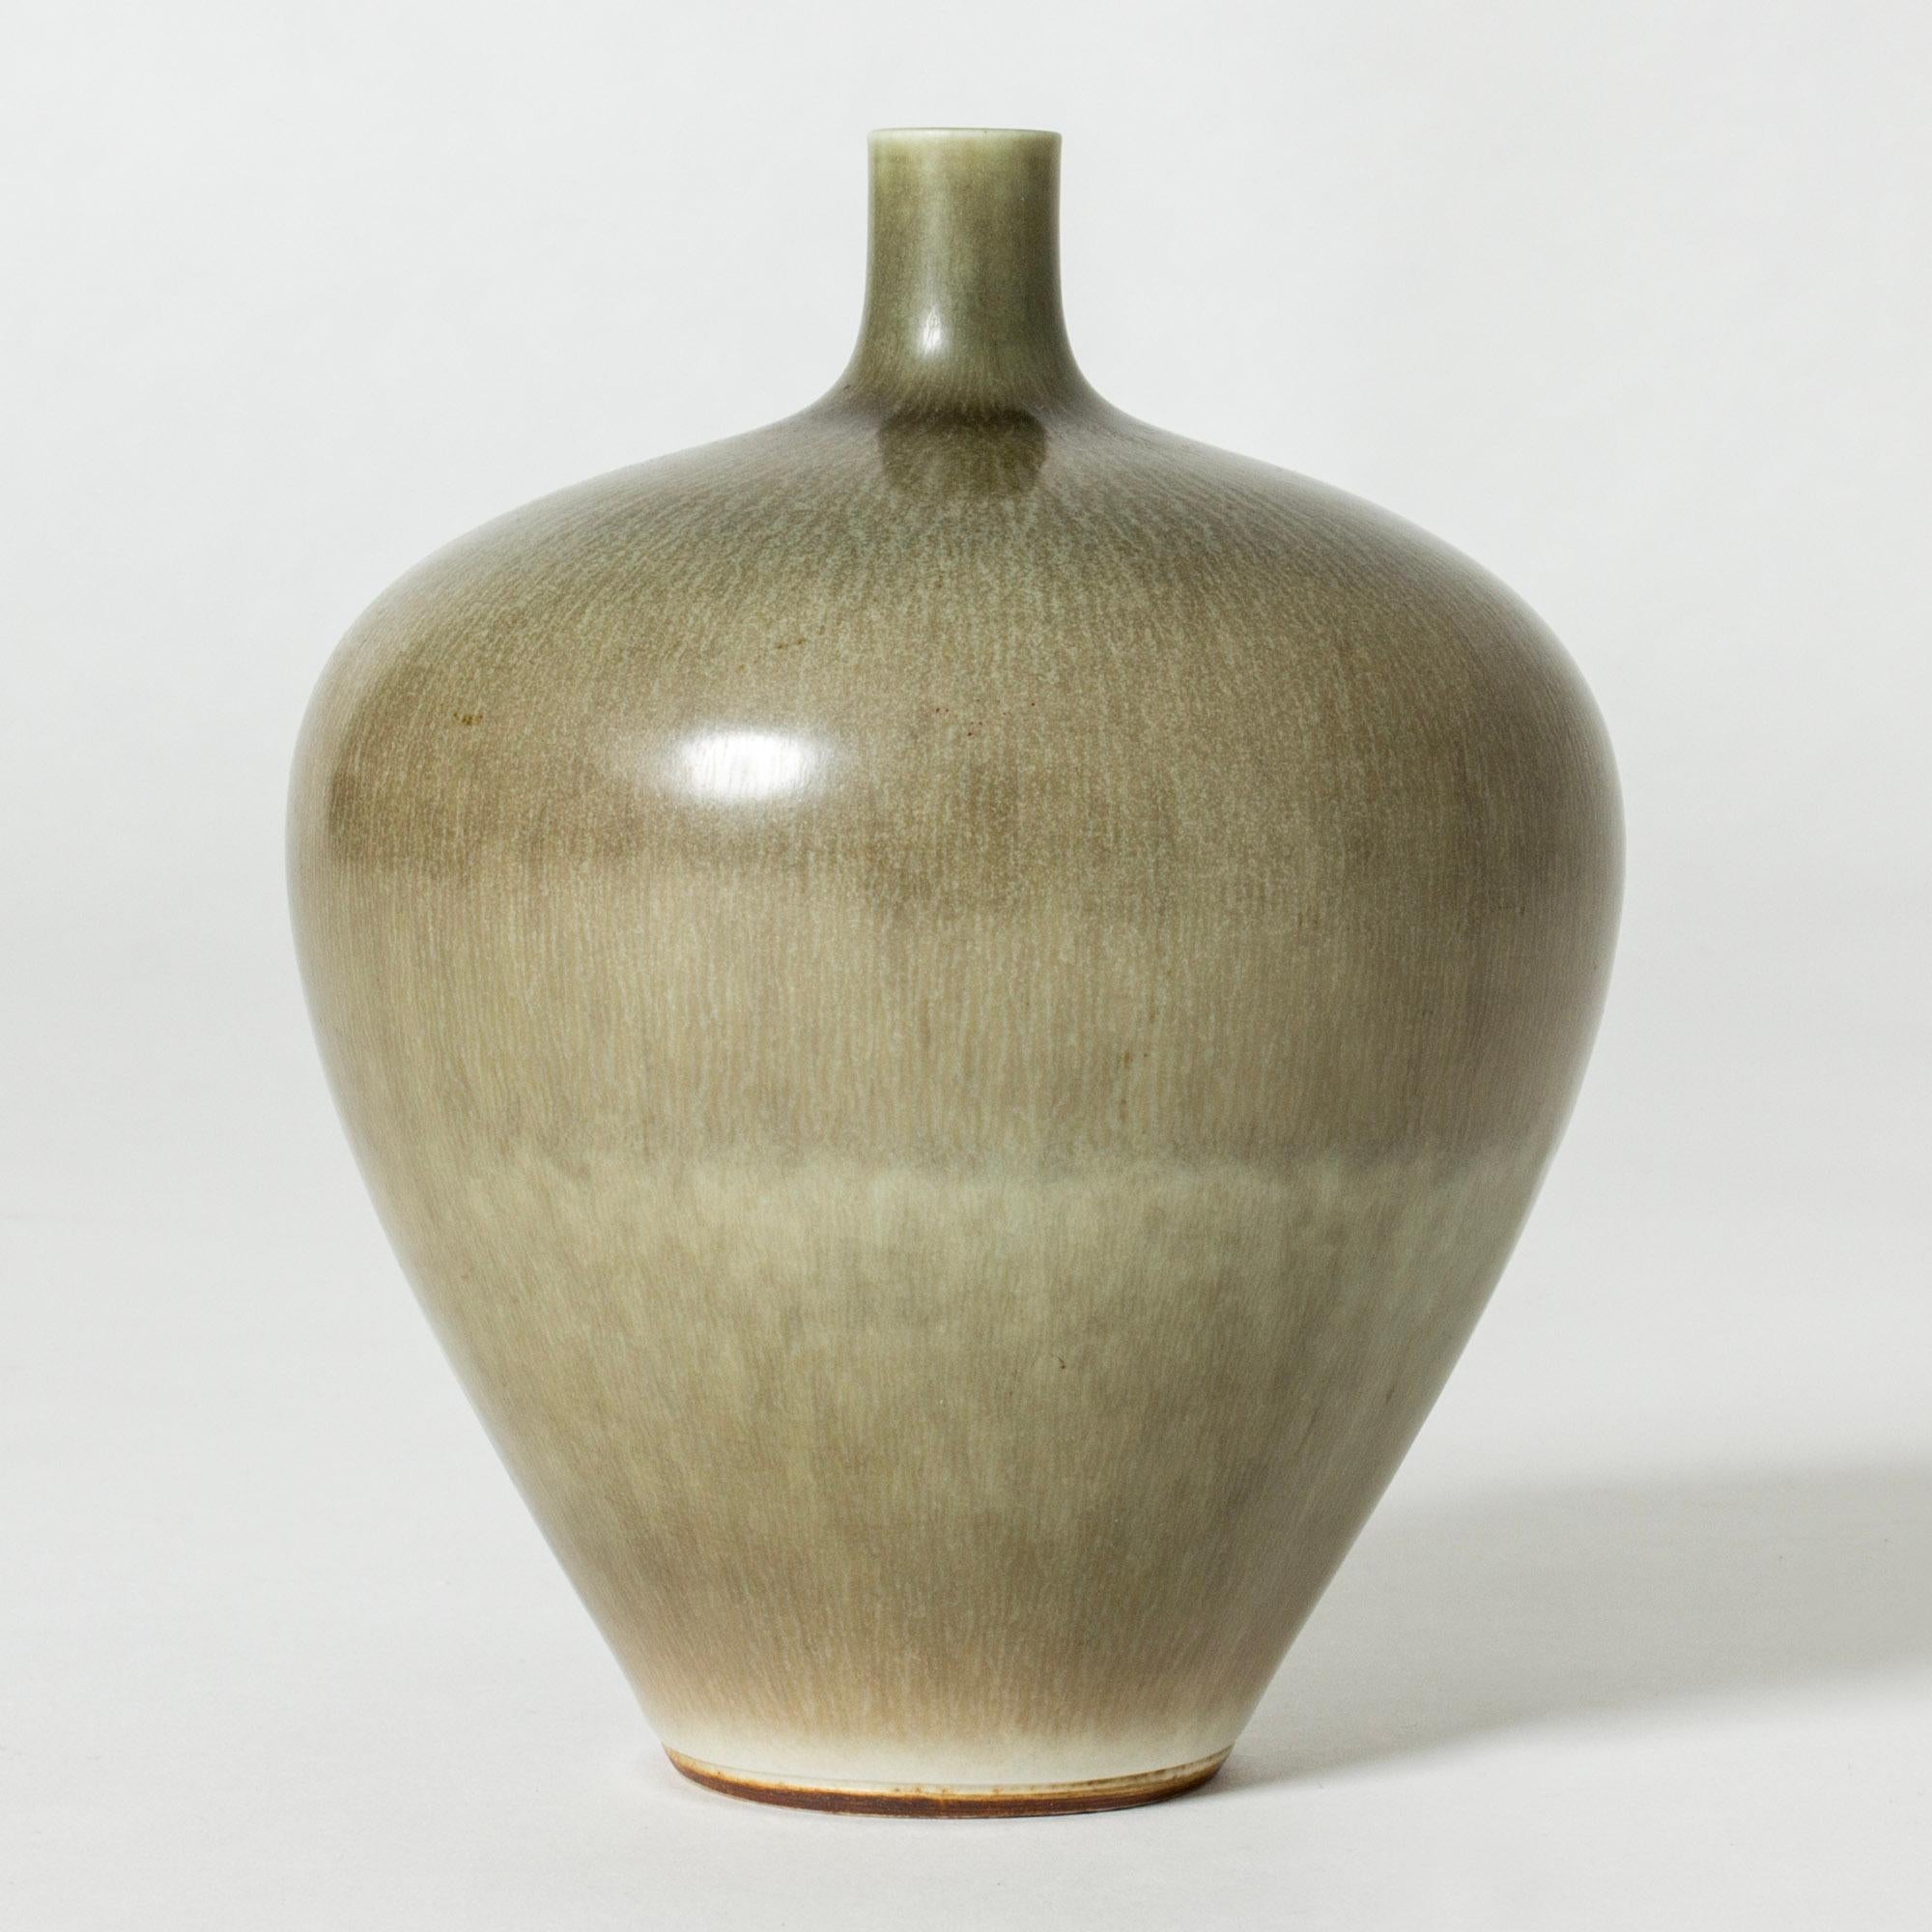 Schöne Vase aus Steinzeug von Berndt Friberg in eleganter Apfelform. Das Fell des Hasen glänzt in wechselnden, maulwurfsfarbenen Nuancen.

Berndt Friberg war ein schwedischer Keramiker, der für seine Steinzeugvasen und -gefäße für Gustavsberg